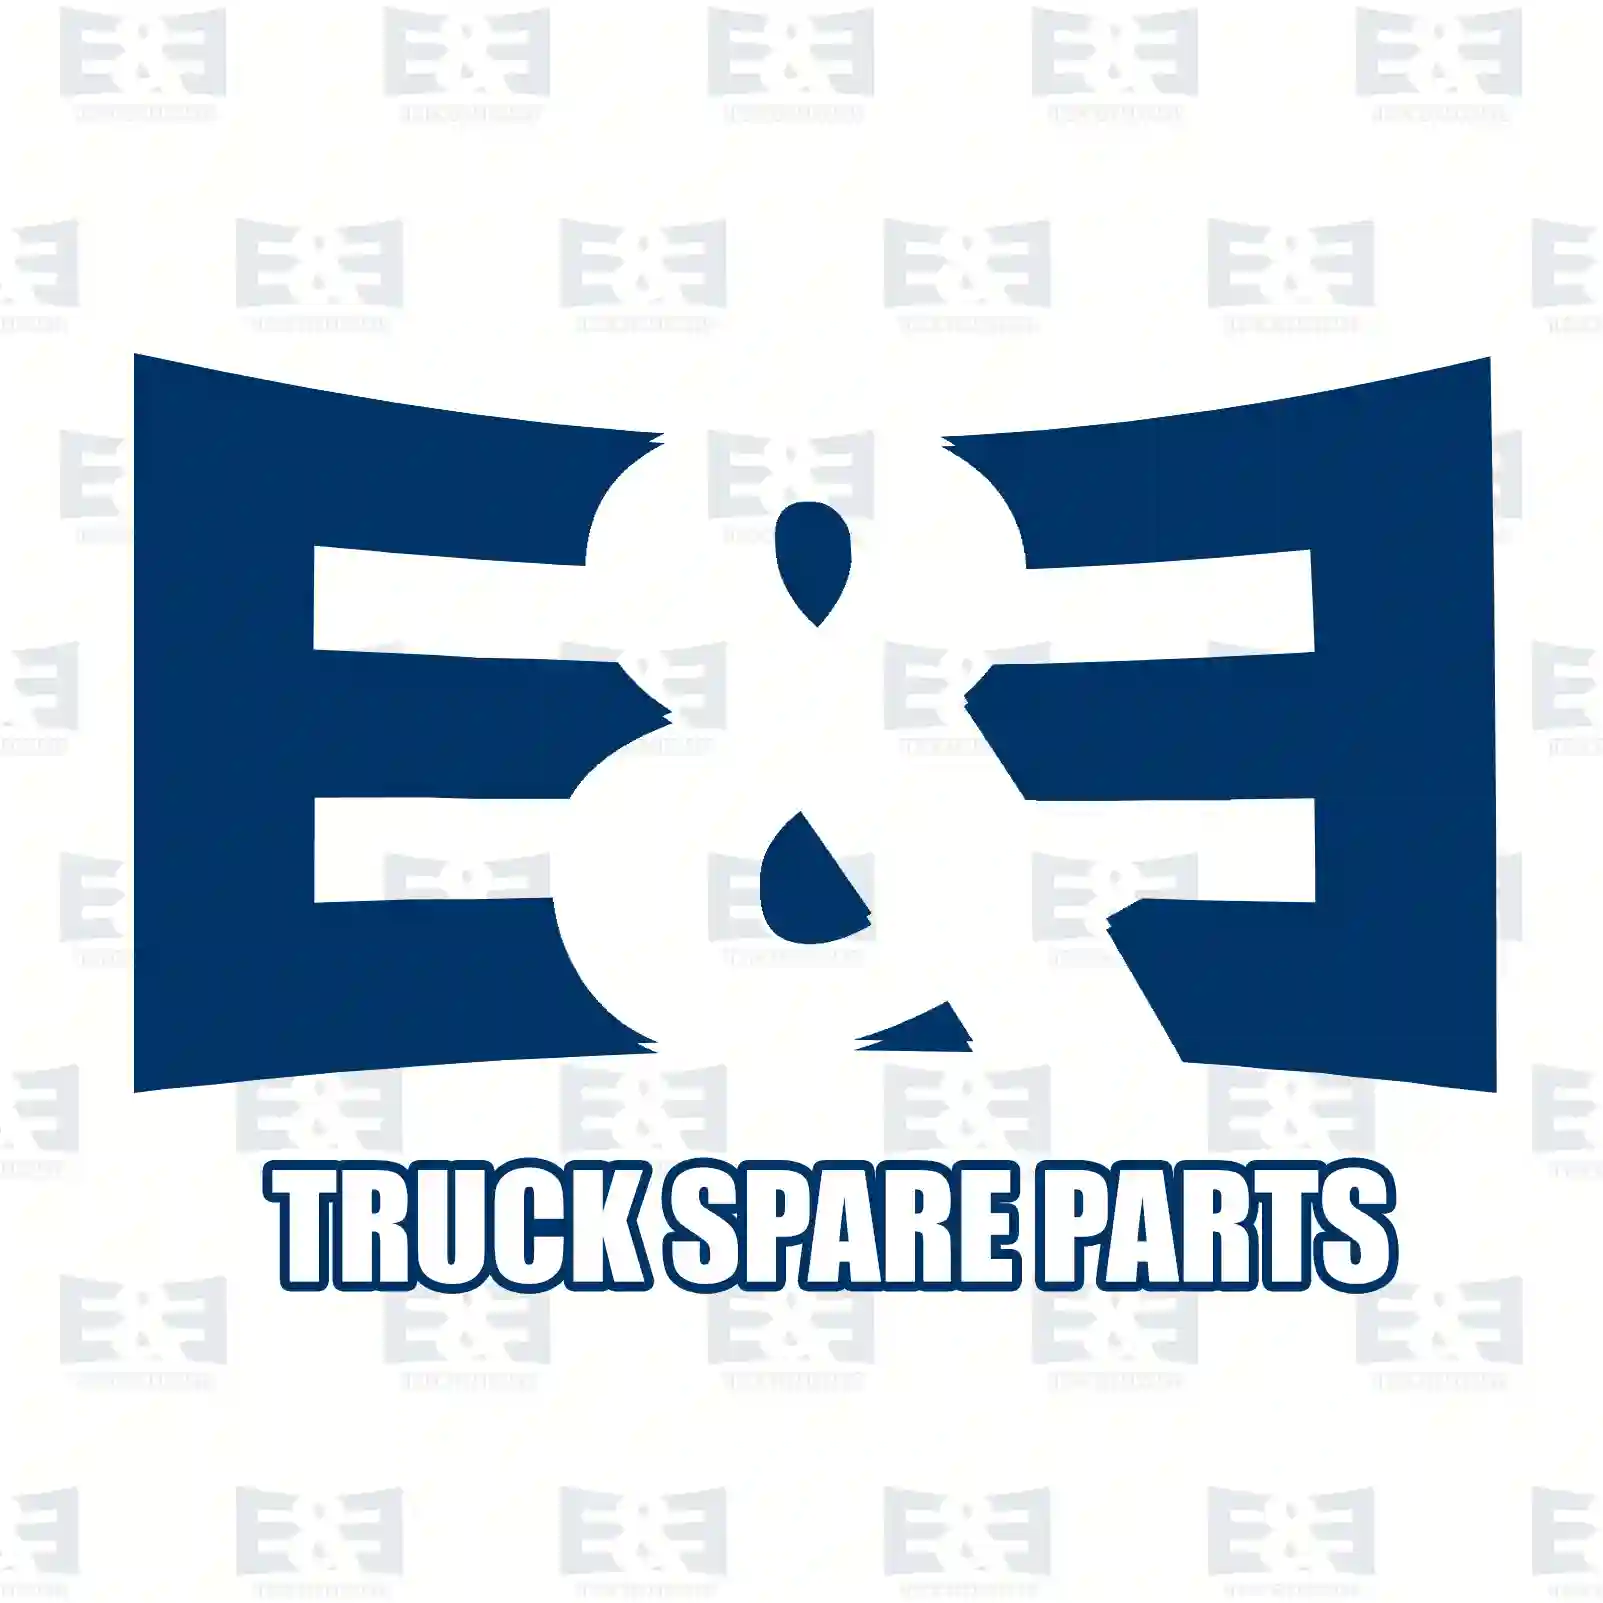 Unit injector, 2E2286919, 10579263, 1499257, 1764364, 579263 ||  2E2286919 E&E Truck Spare Parts | Truck Spare Parts, Auotomotive Spare Parts Unit injector, 2E2286919, 10579263, 1499257, 1764364, 579263 ||  2E2286919 E&E Truck Spare Parts | Truck Spare Parts, Auotomotive Spare Parts